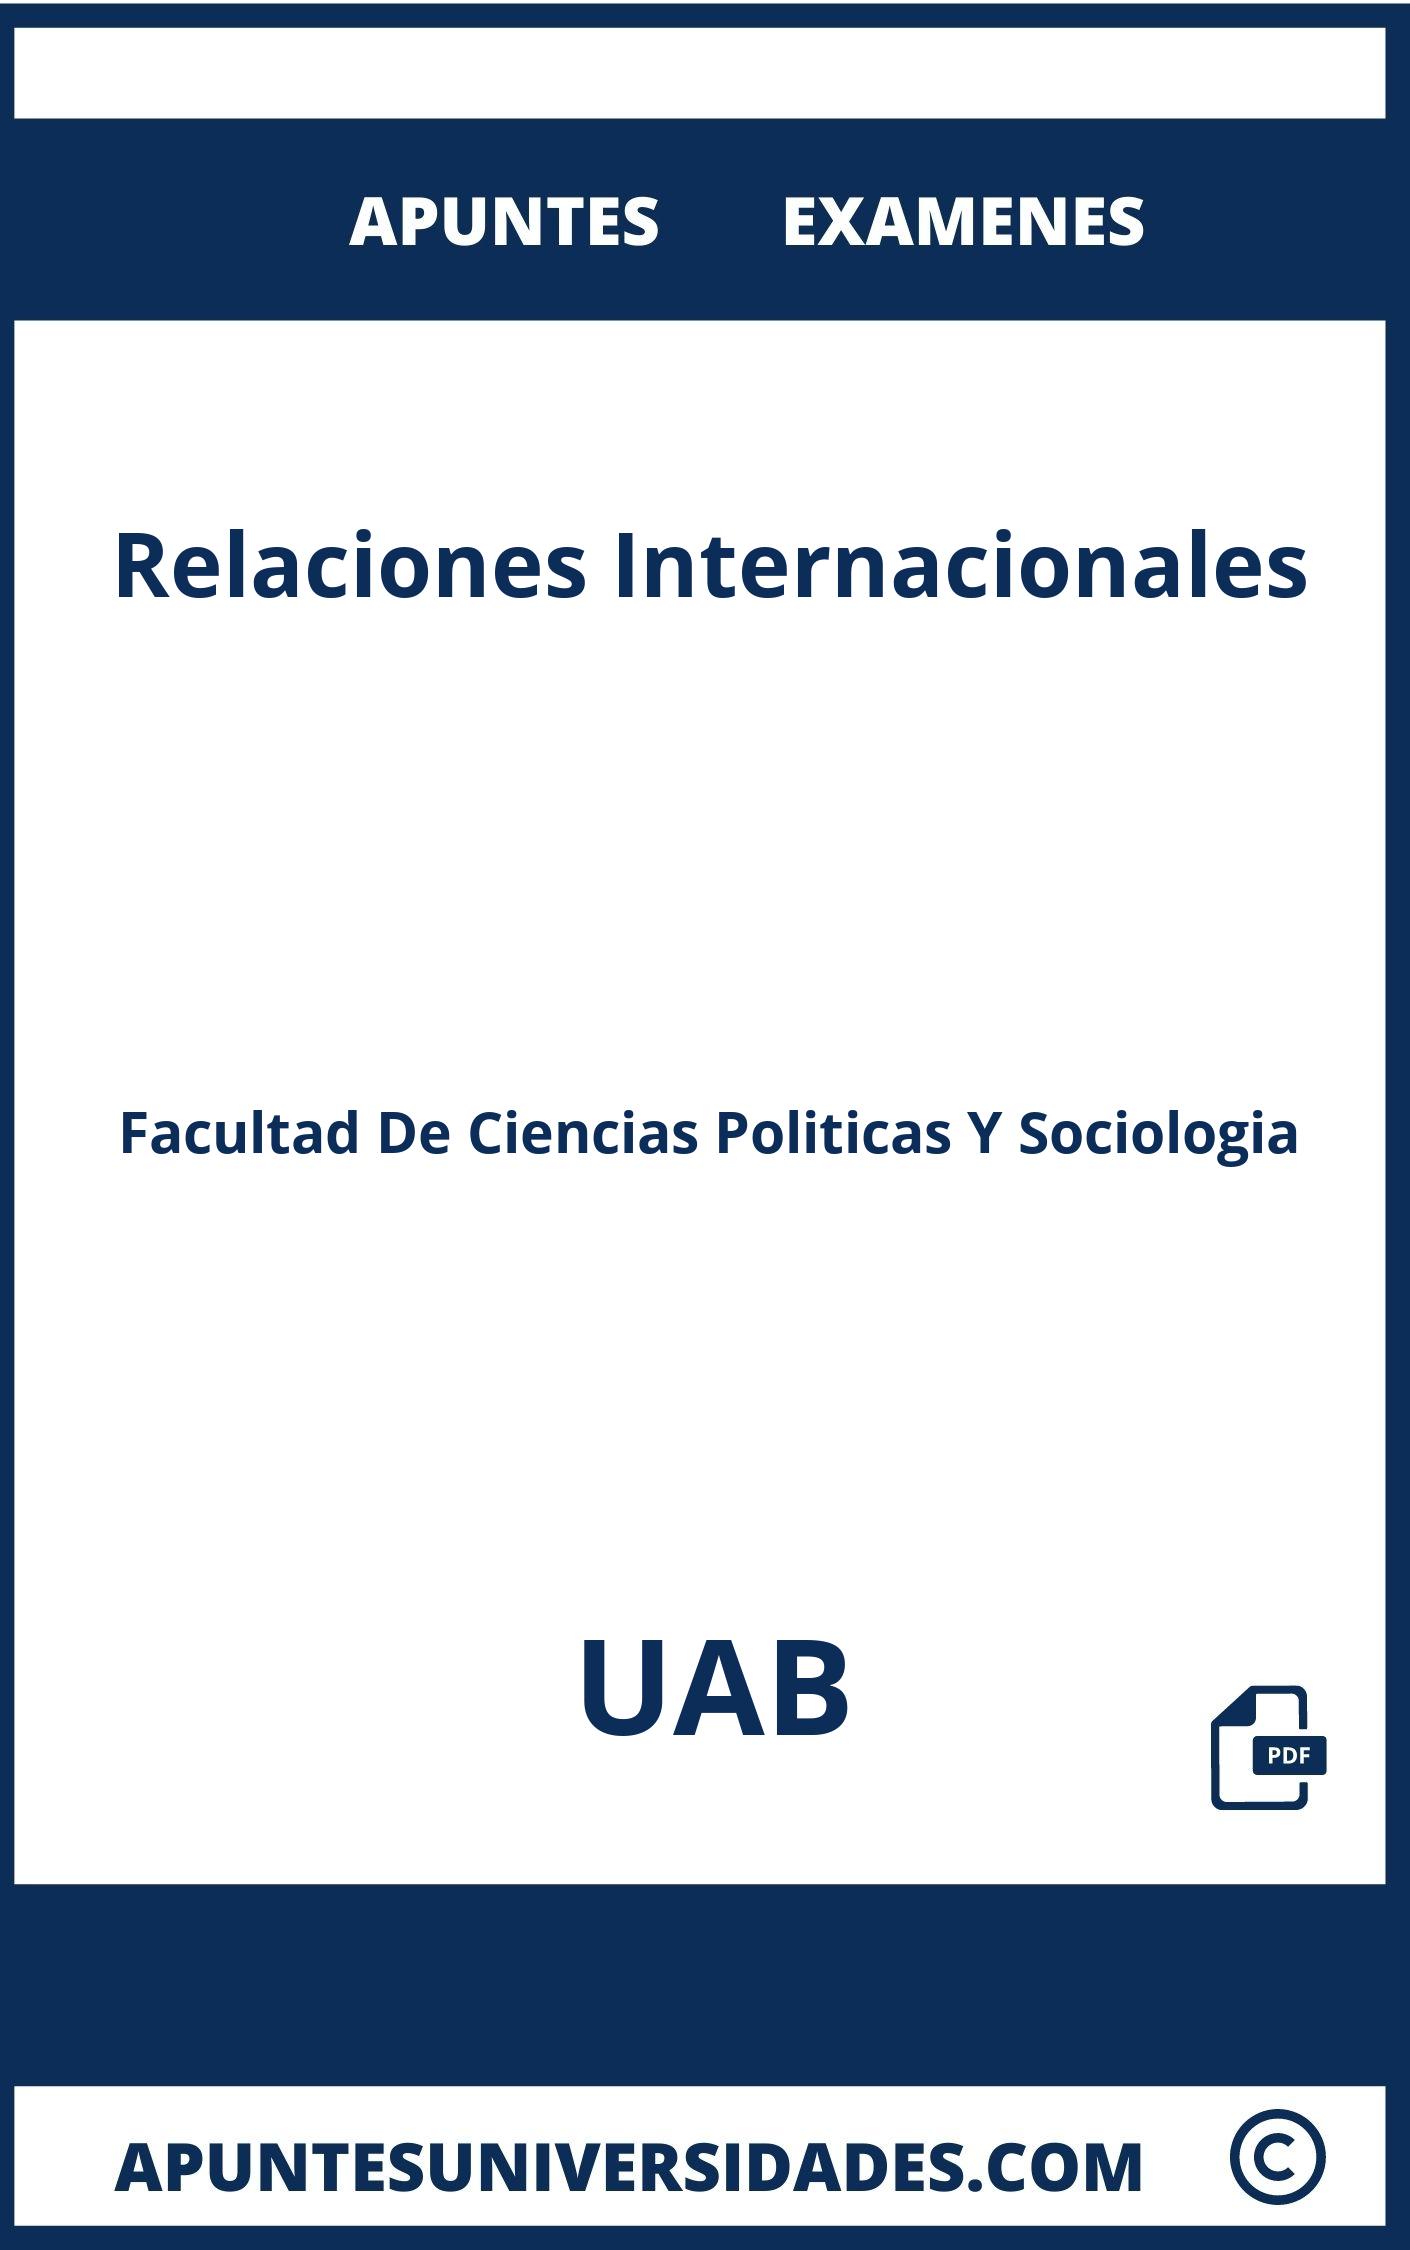 Examenes Relaciones Internacionales UAB y Apuntes